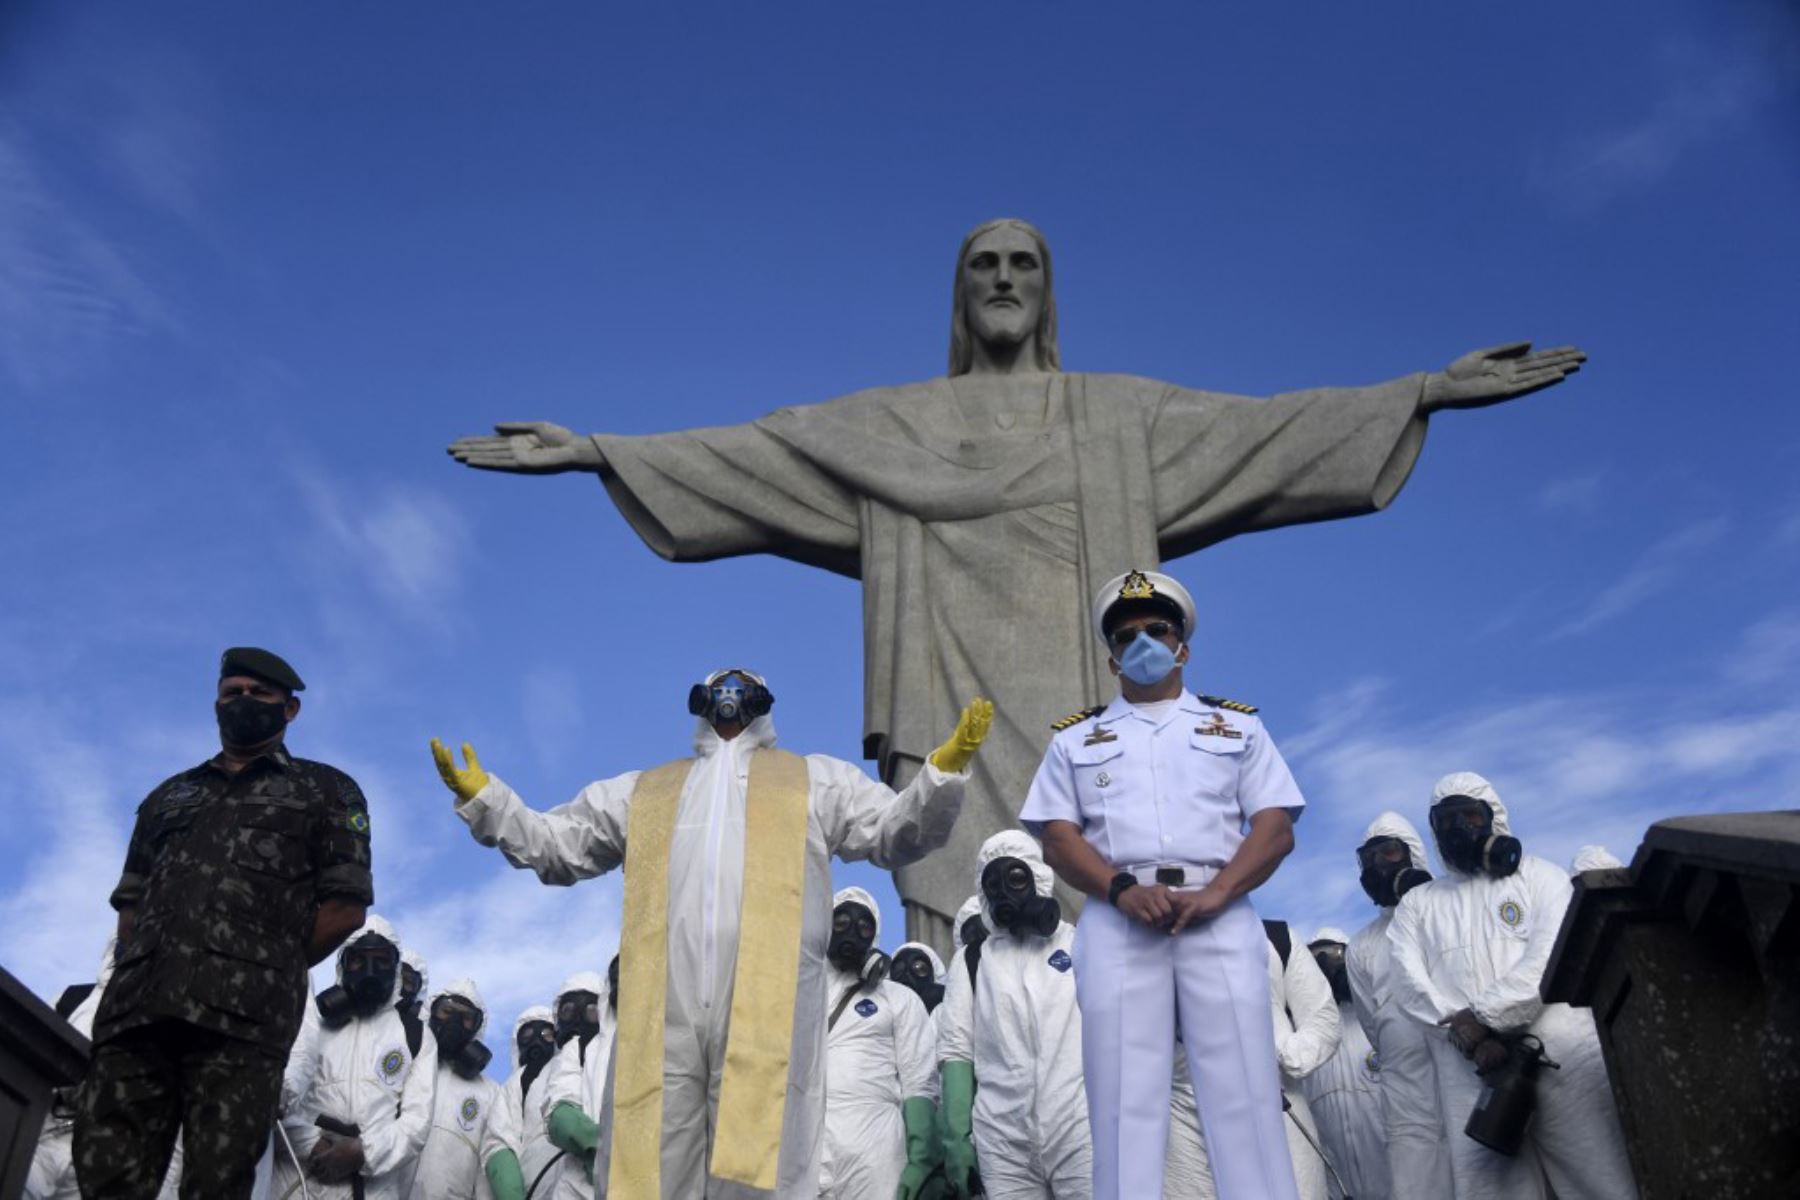 El padre Omar Raposo (C) del Santuario de Corcovado ora entre miembros de las Fuerzas Armadas de Brasil durante la desinfección de la estatua del Cristo Redentor en la montaña de Corcovado, en Río de Janeiro, Brasil

Foto: AFP